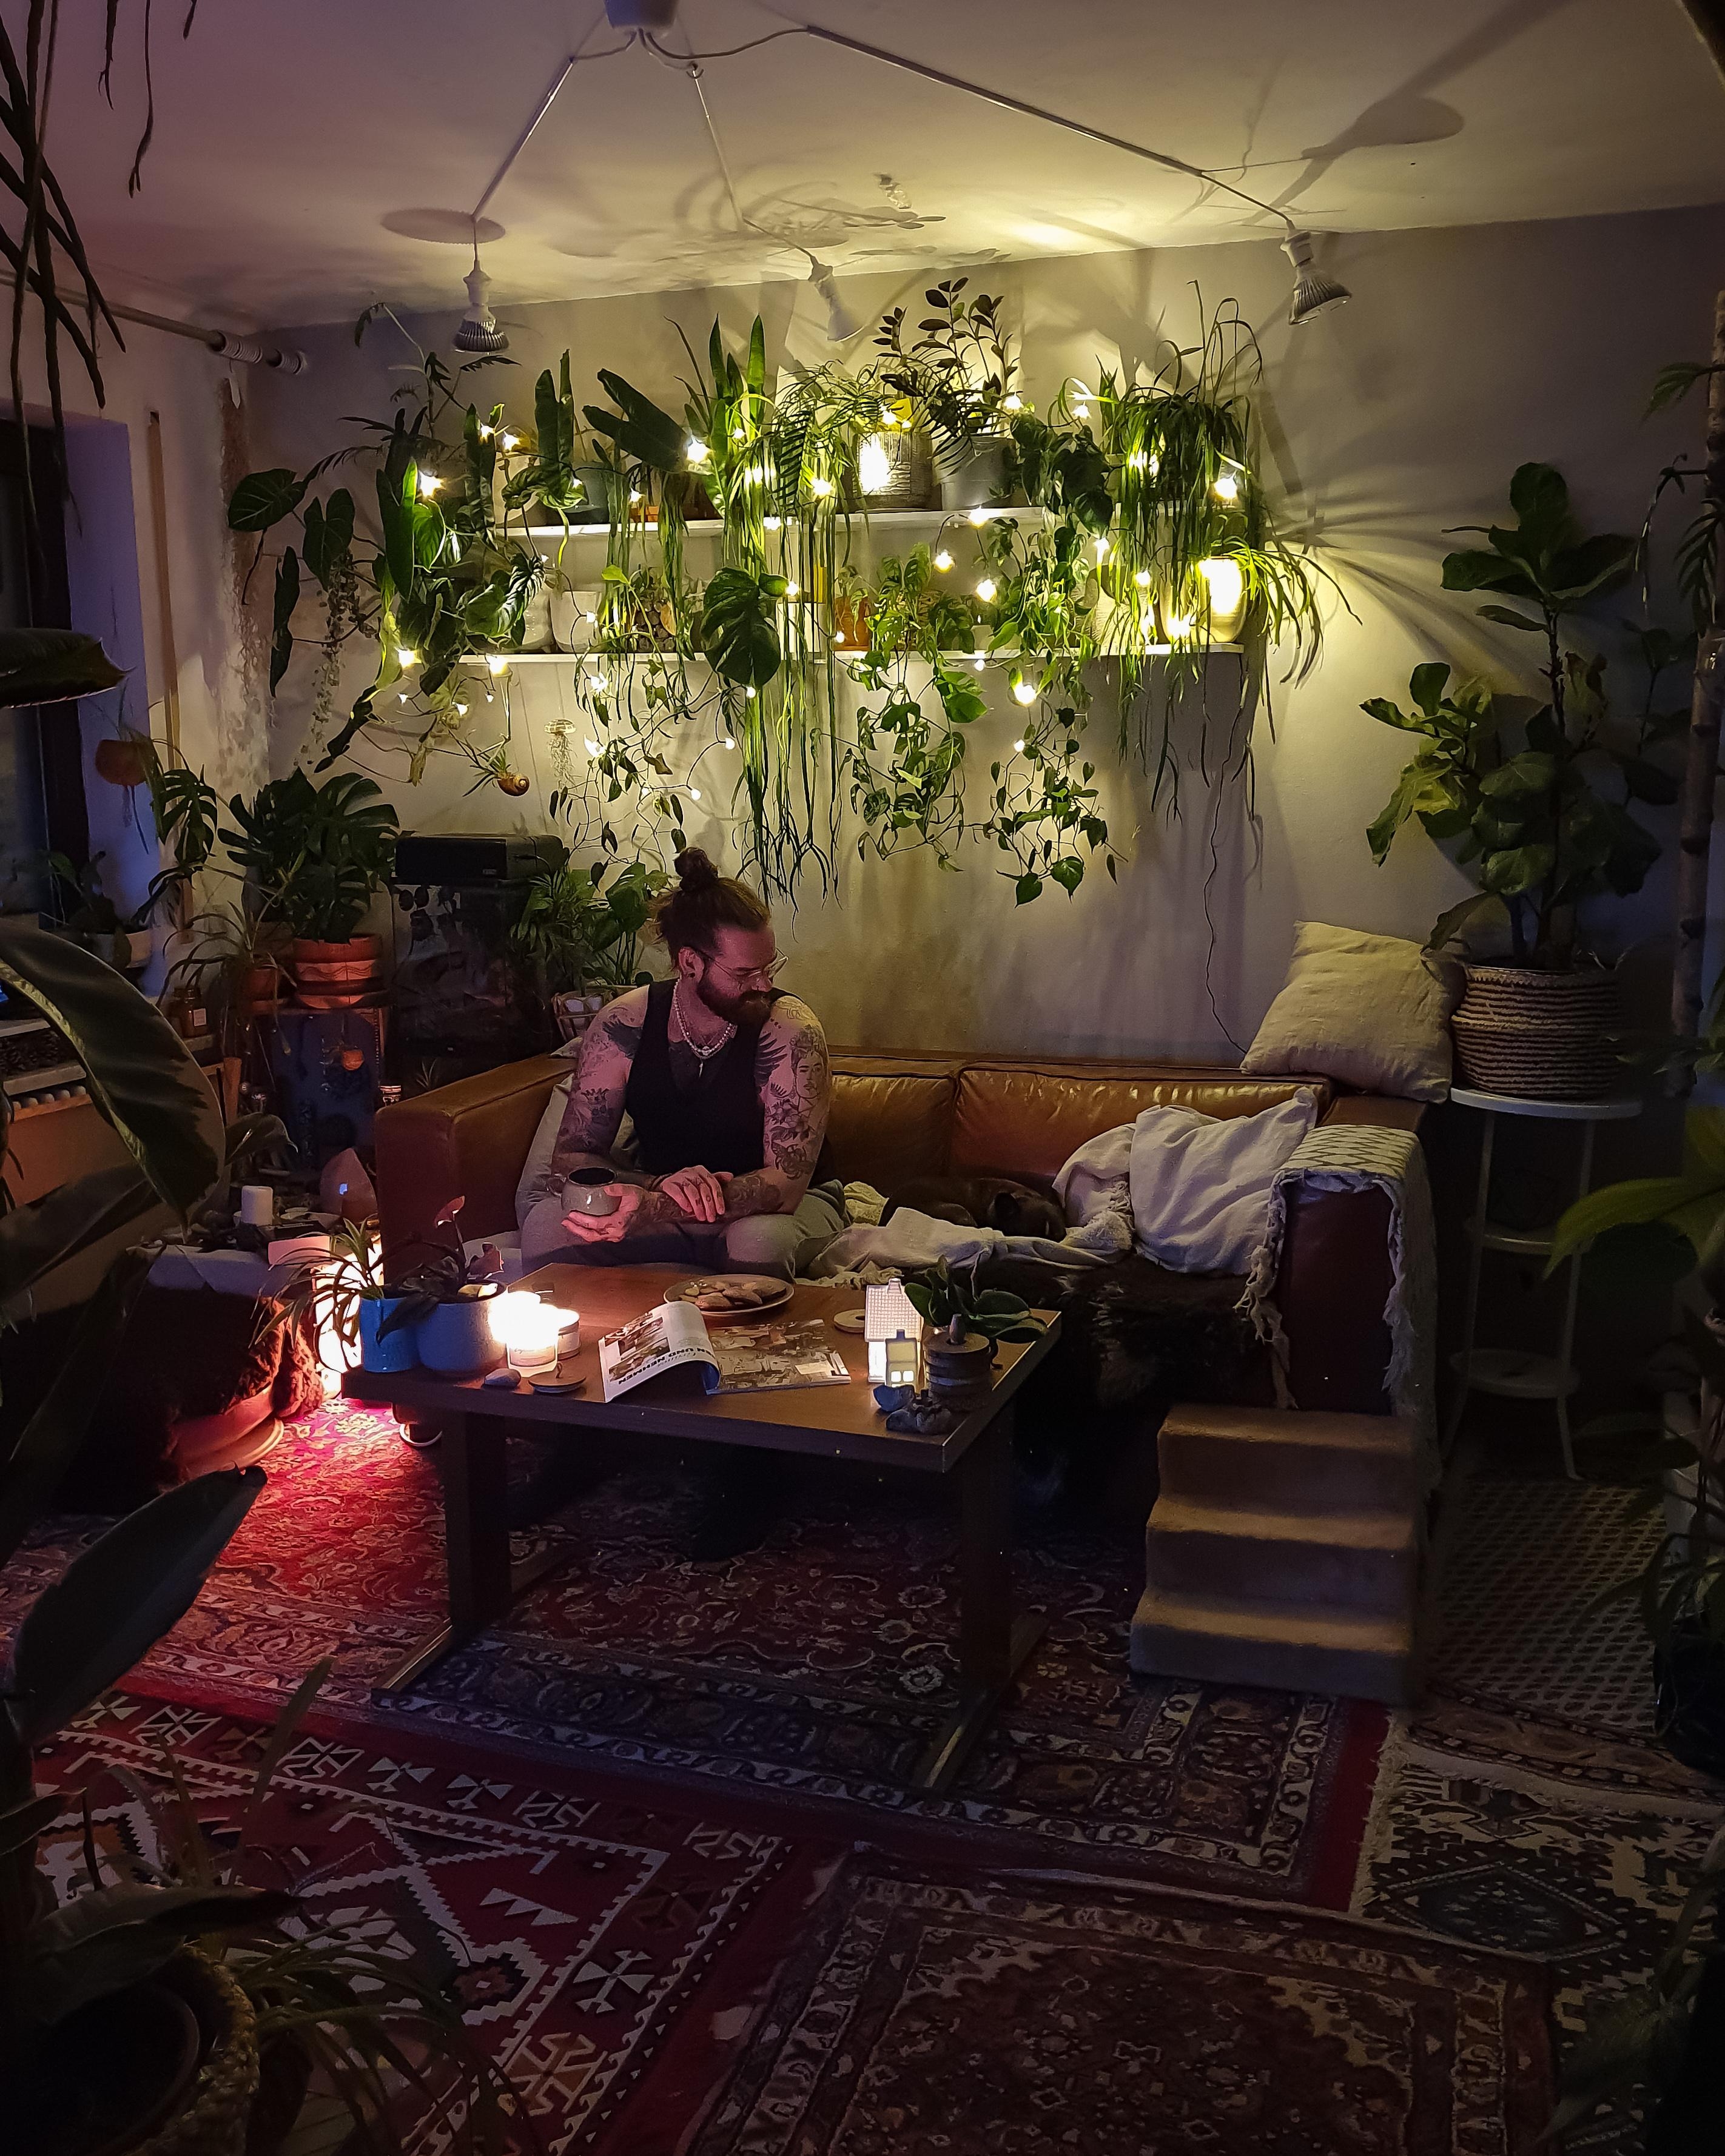 Sonntagsritual ❤ #Wohnzimmer #Wohnung #Einrichtung #Couch #Sofa #Pflanzen #Regal #deko #dekoidee #boho #hippie #hygge #l